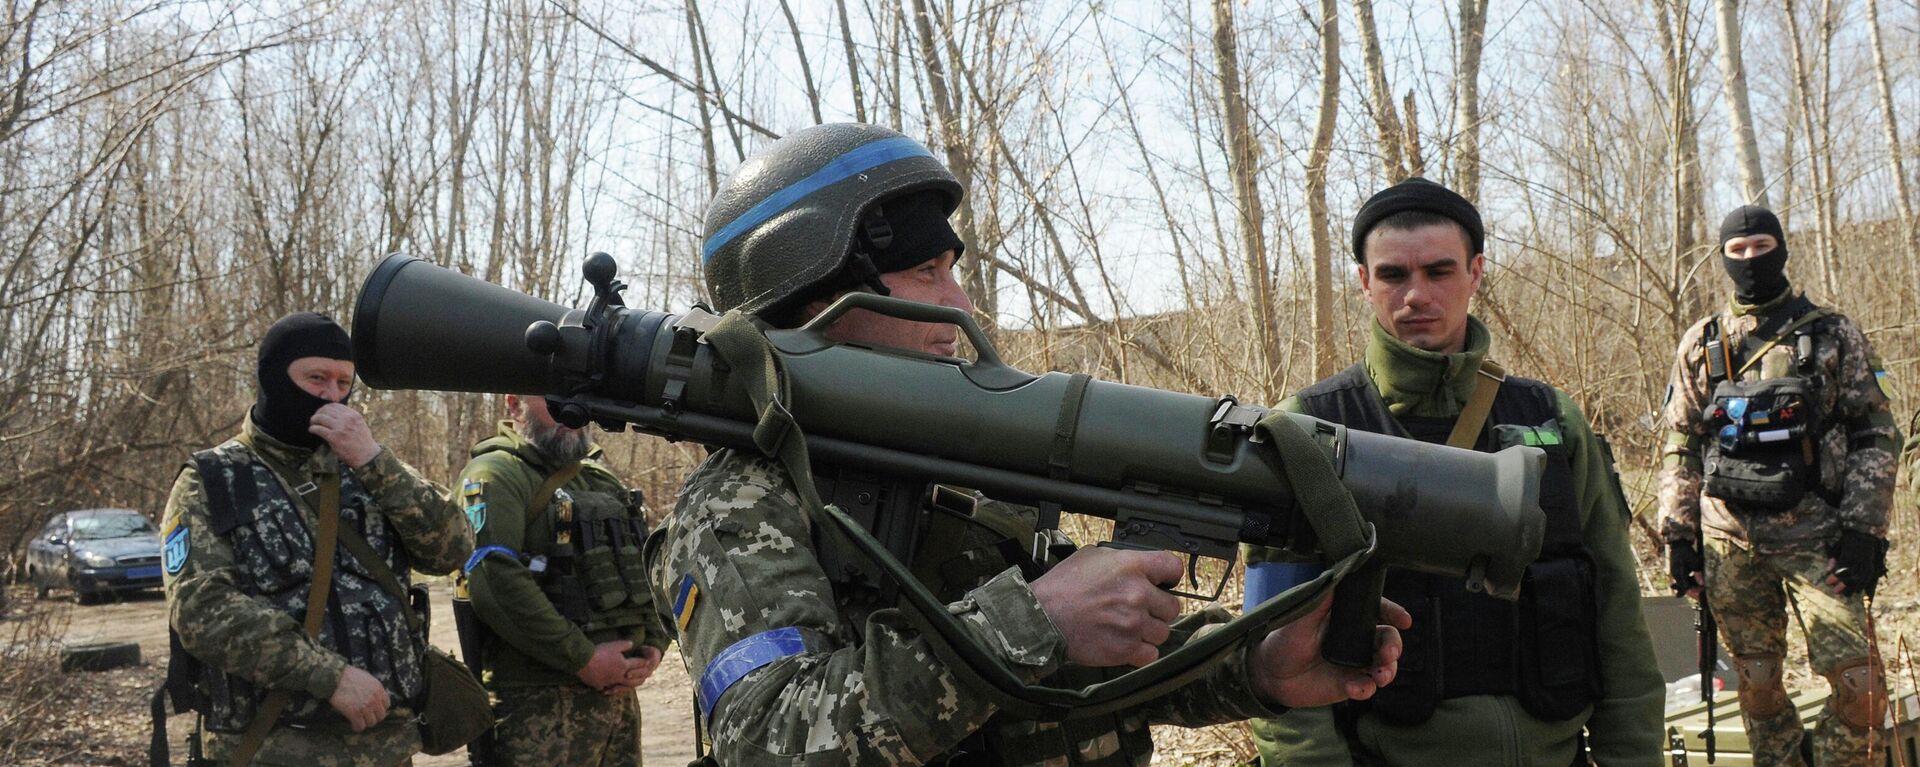 Quân nhân Ukraina đang nghiên cứu hệ thống di động Carl Gustaf M4 của Thụy Điển gần Kharkov - Sputnik Việt Nam, 1920, 20.07.2022